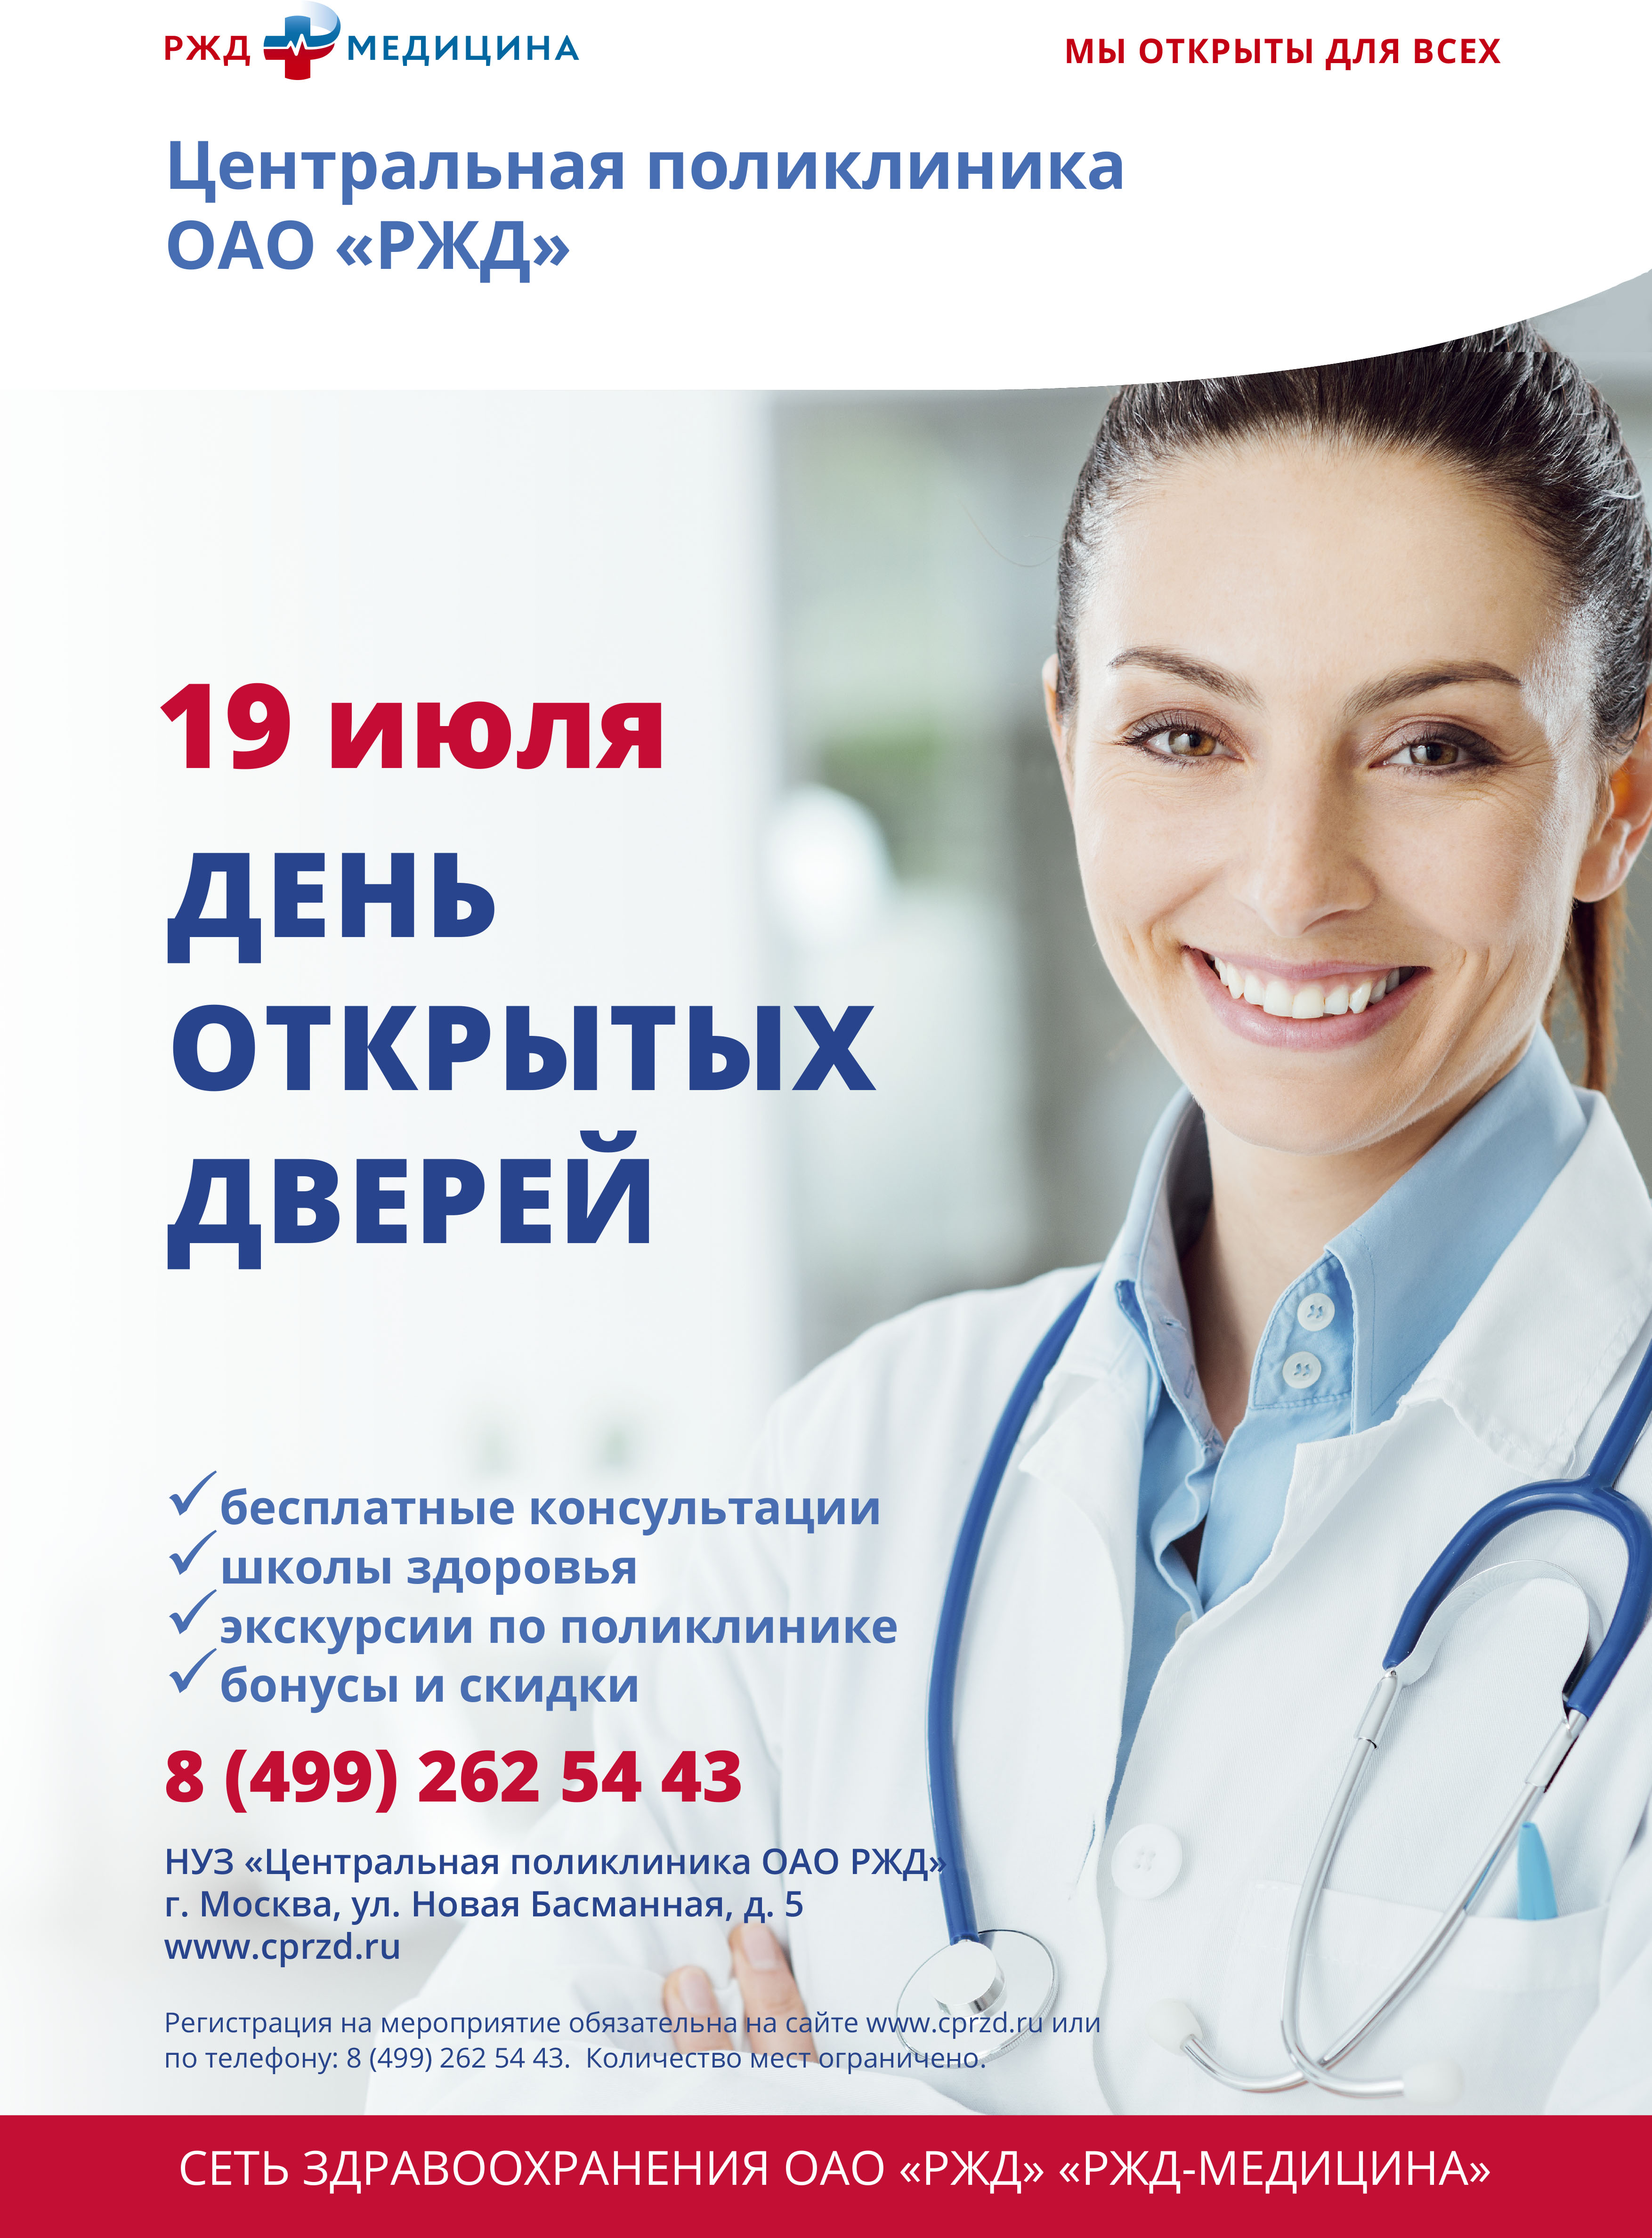 День открытых дверей в Центральной поликлинике ОАО РЖД